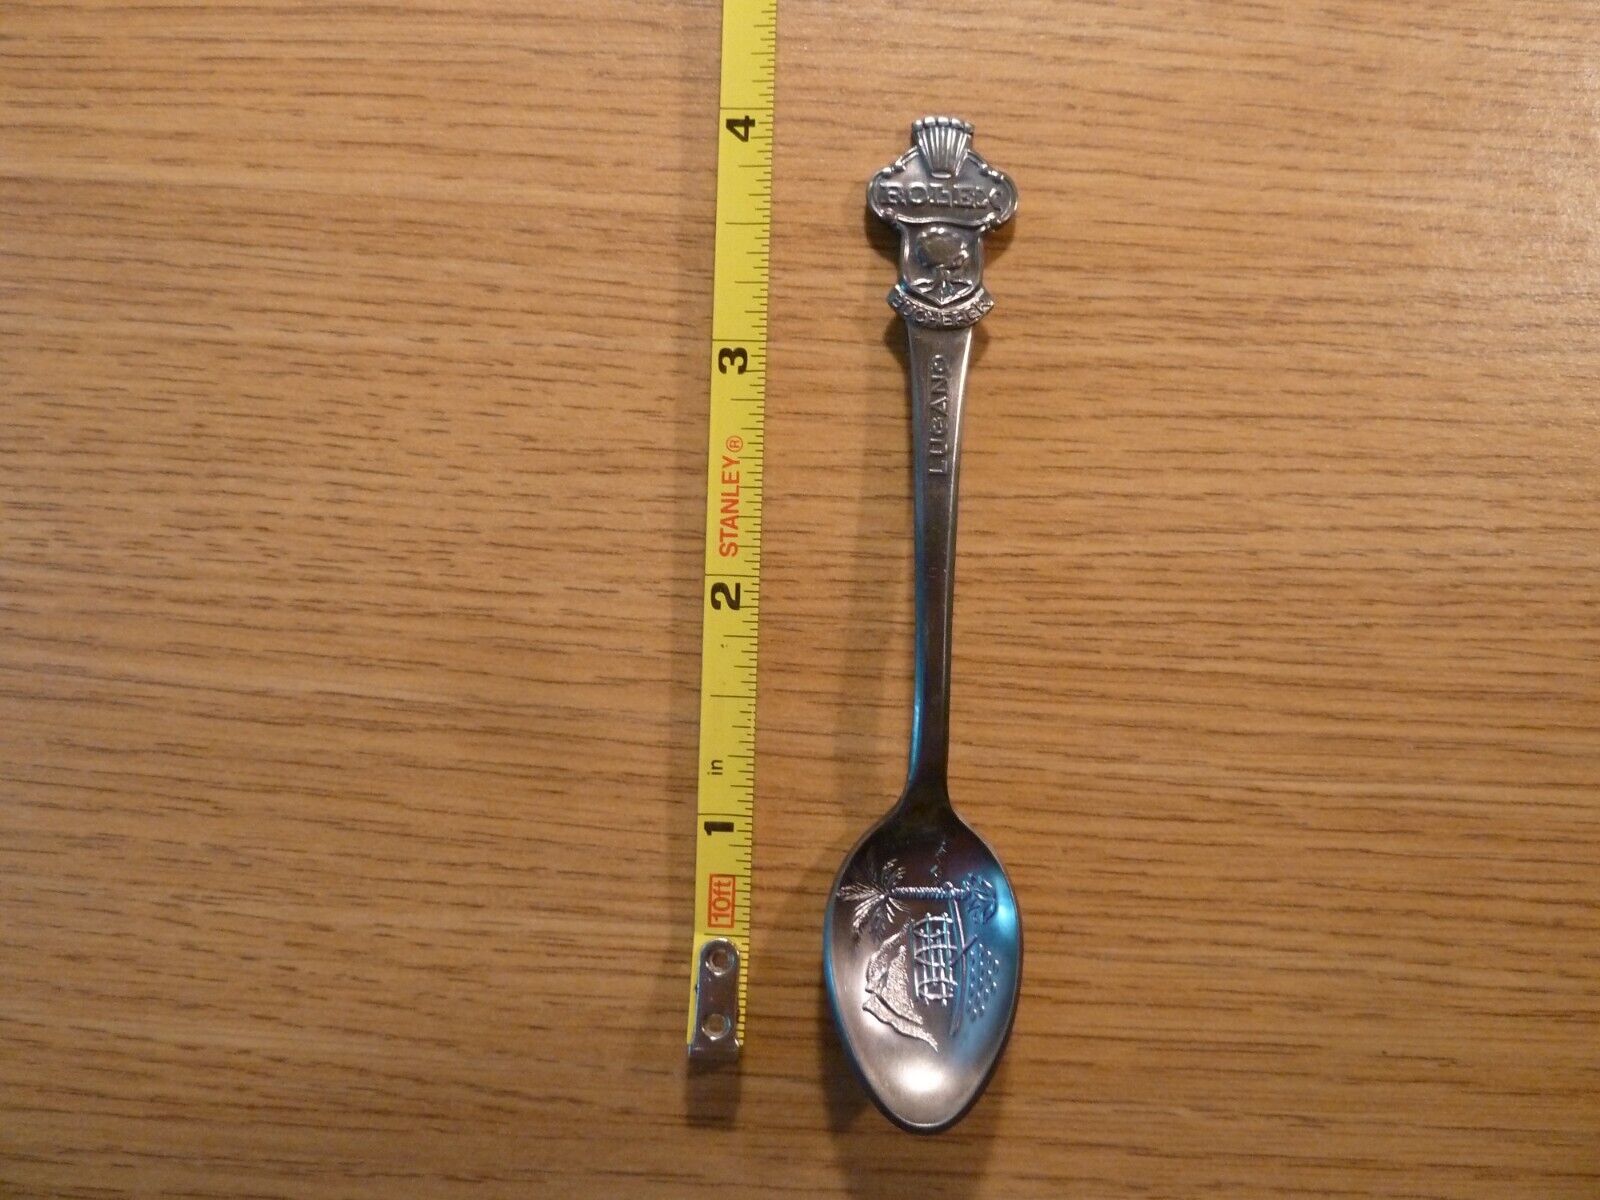 Lucerne Rolex Bucherer Of Switzerland Vintage Souvenir Spoon Collectible